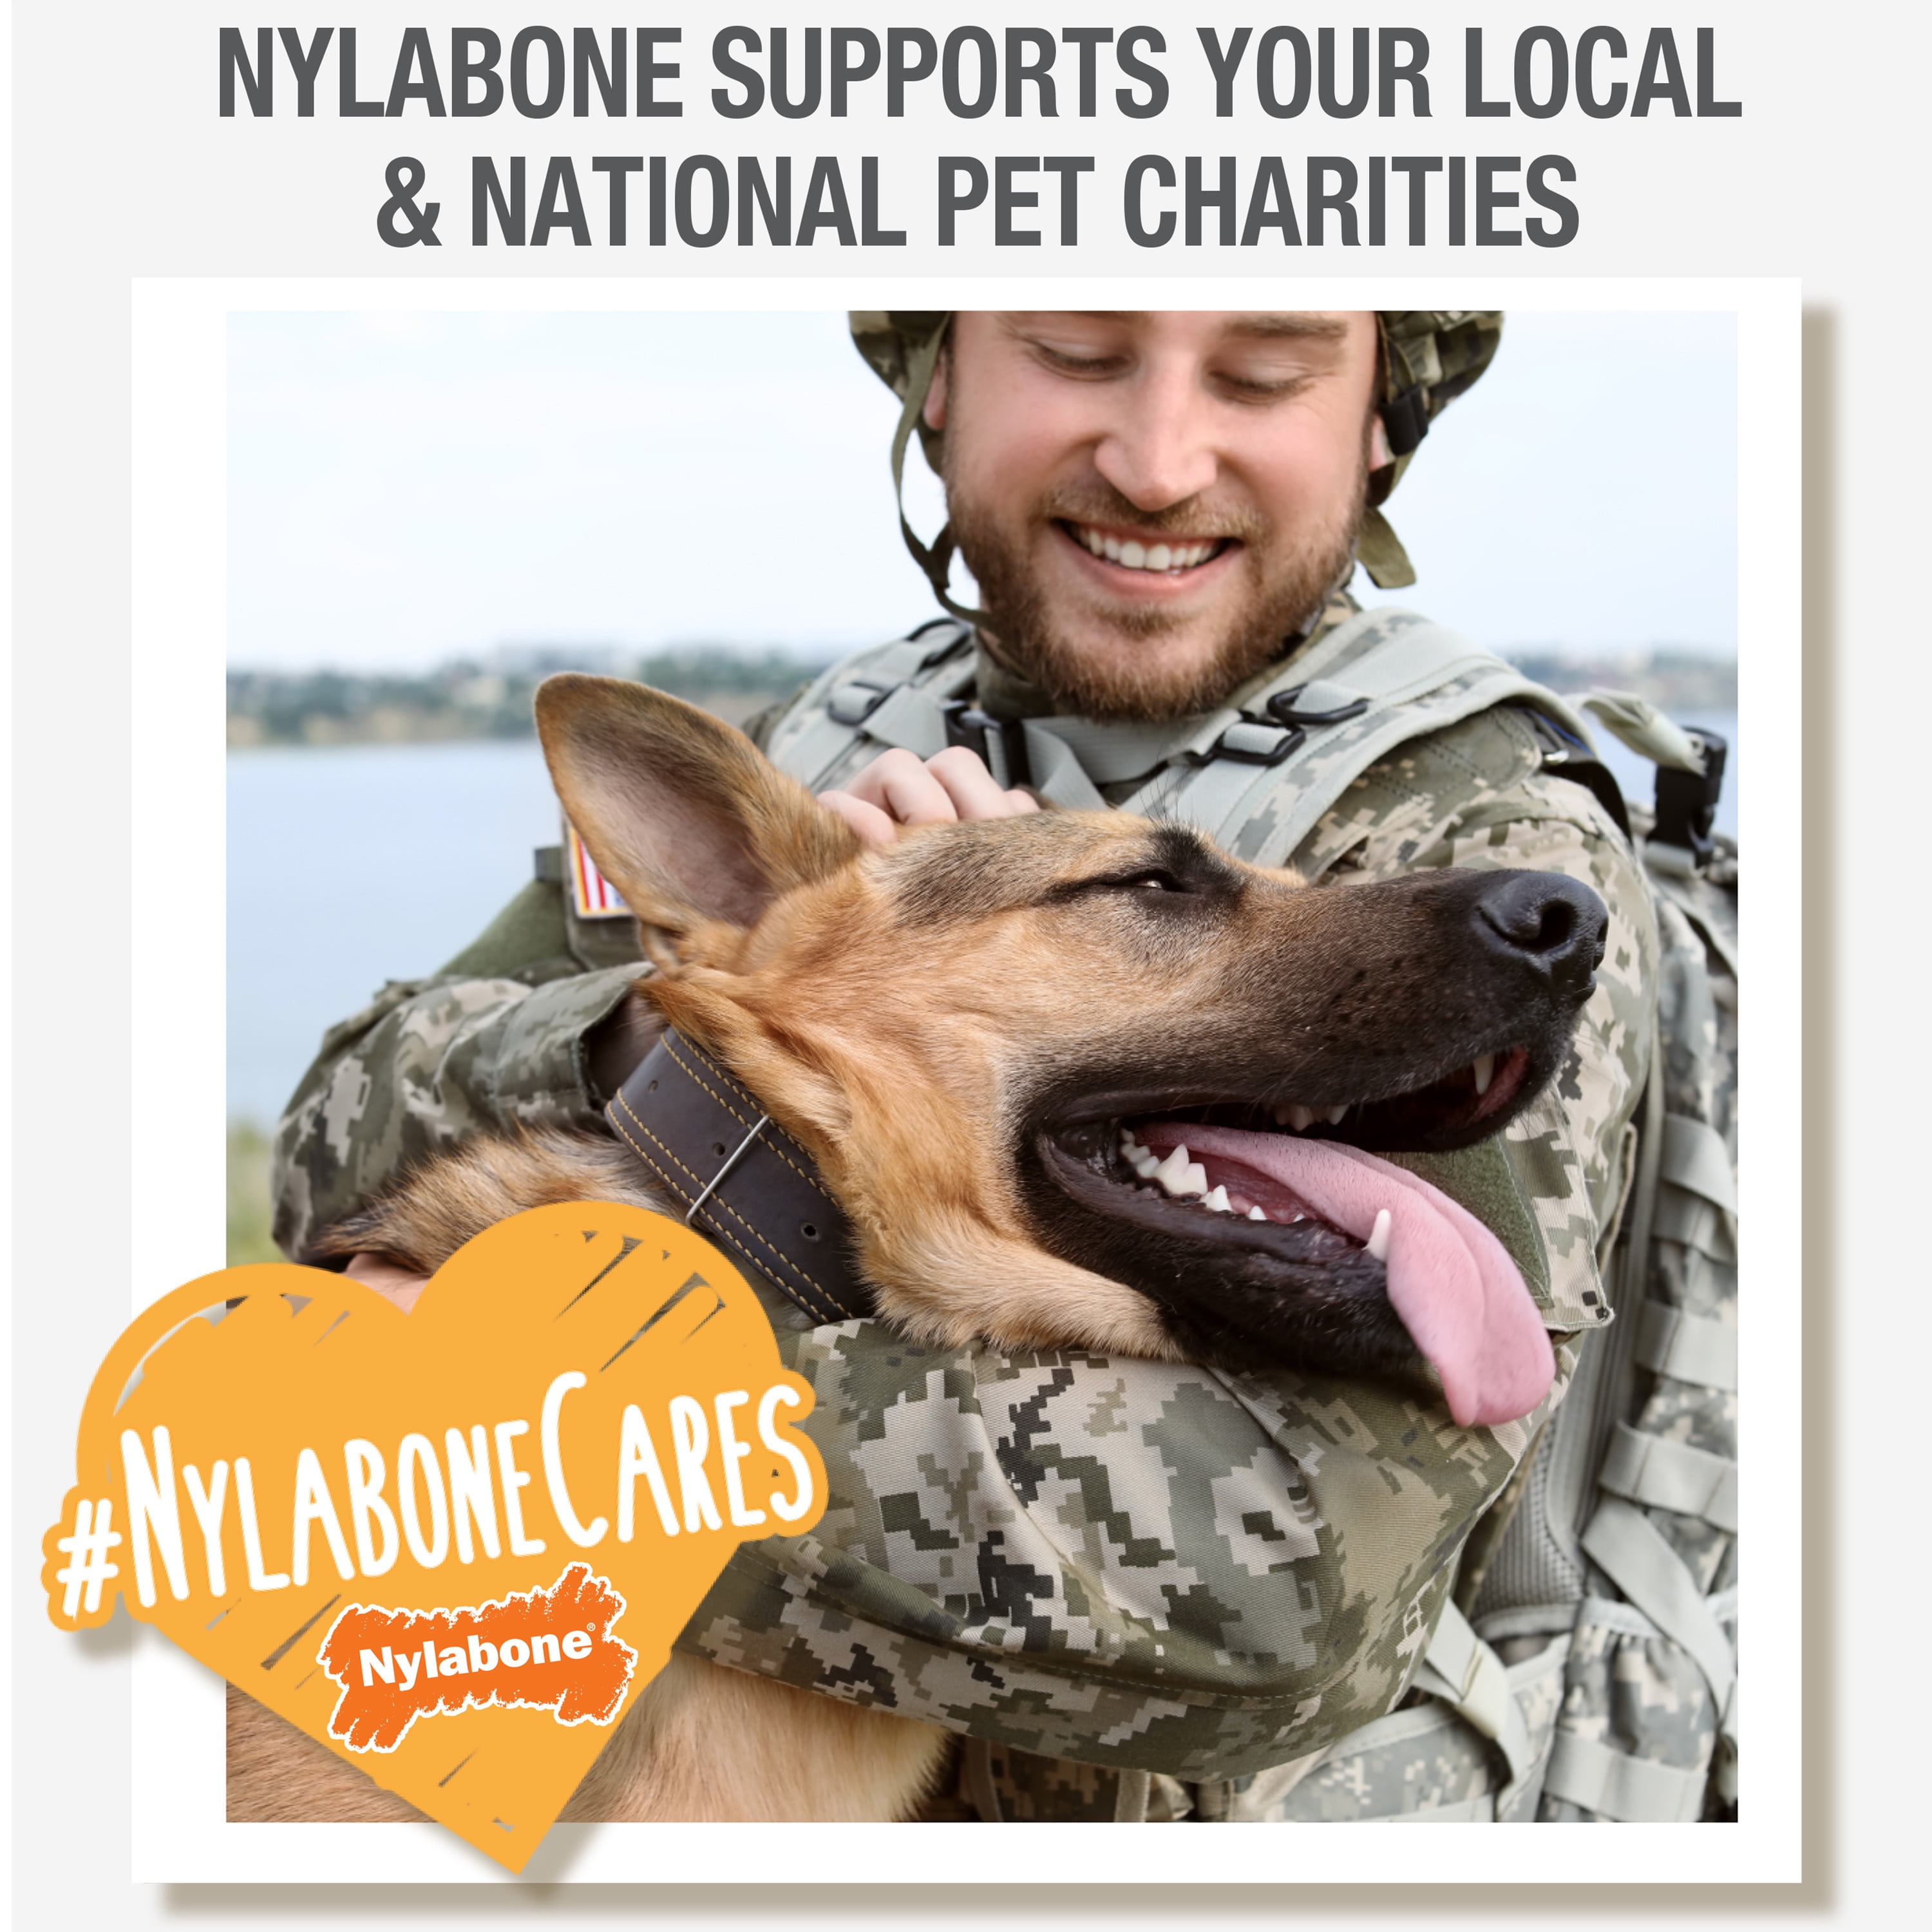 Nylabone Cares  Donating to Dog Shelters